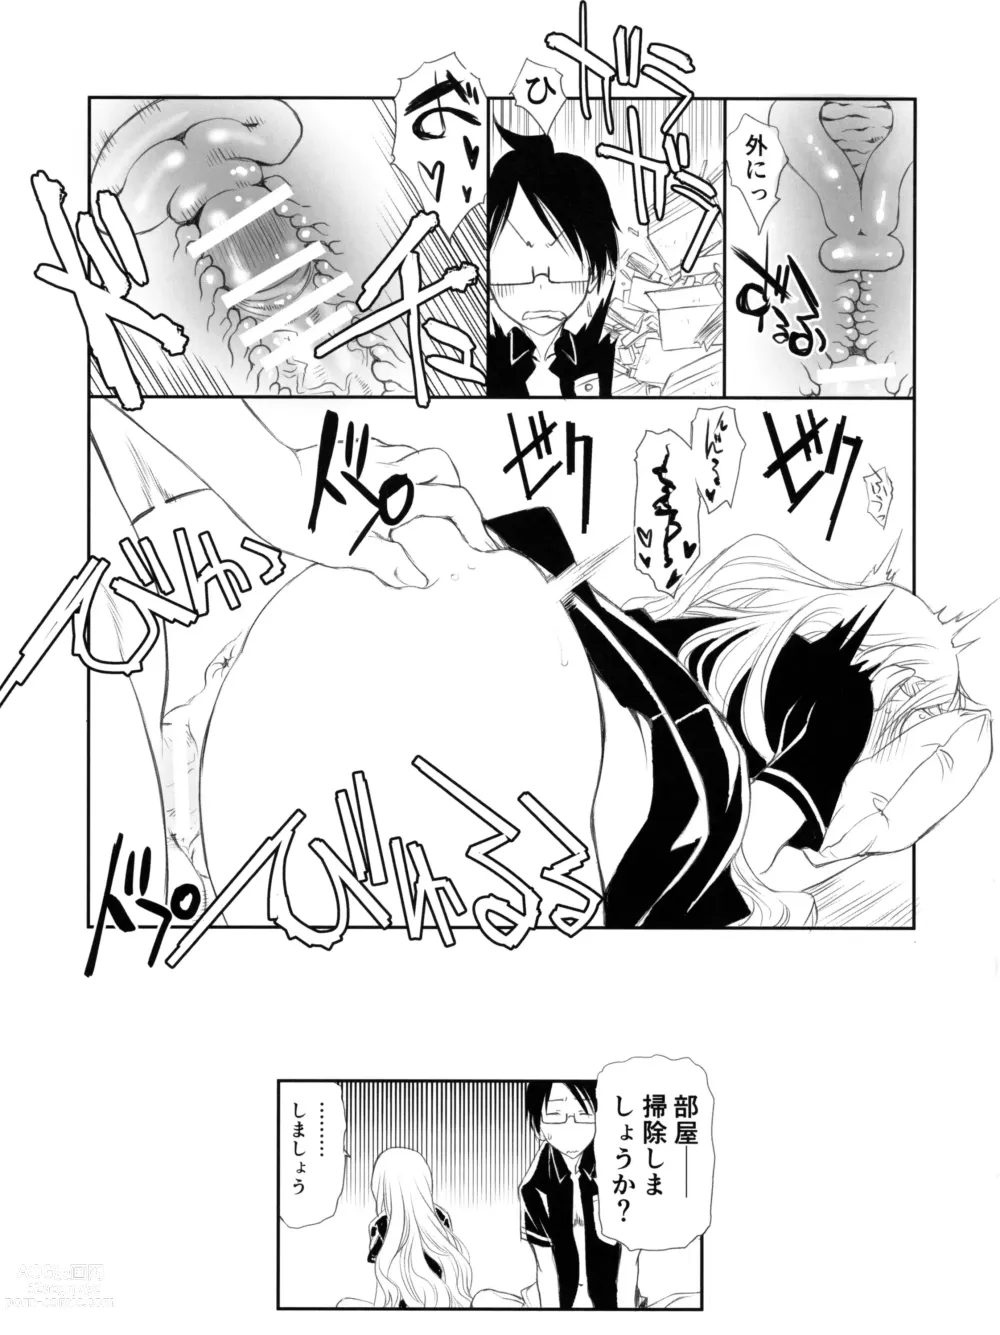 Page 15 of doujinshi Sensei wa Seisou ga Dekinai